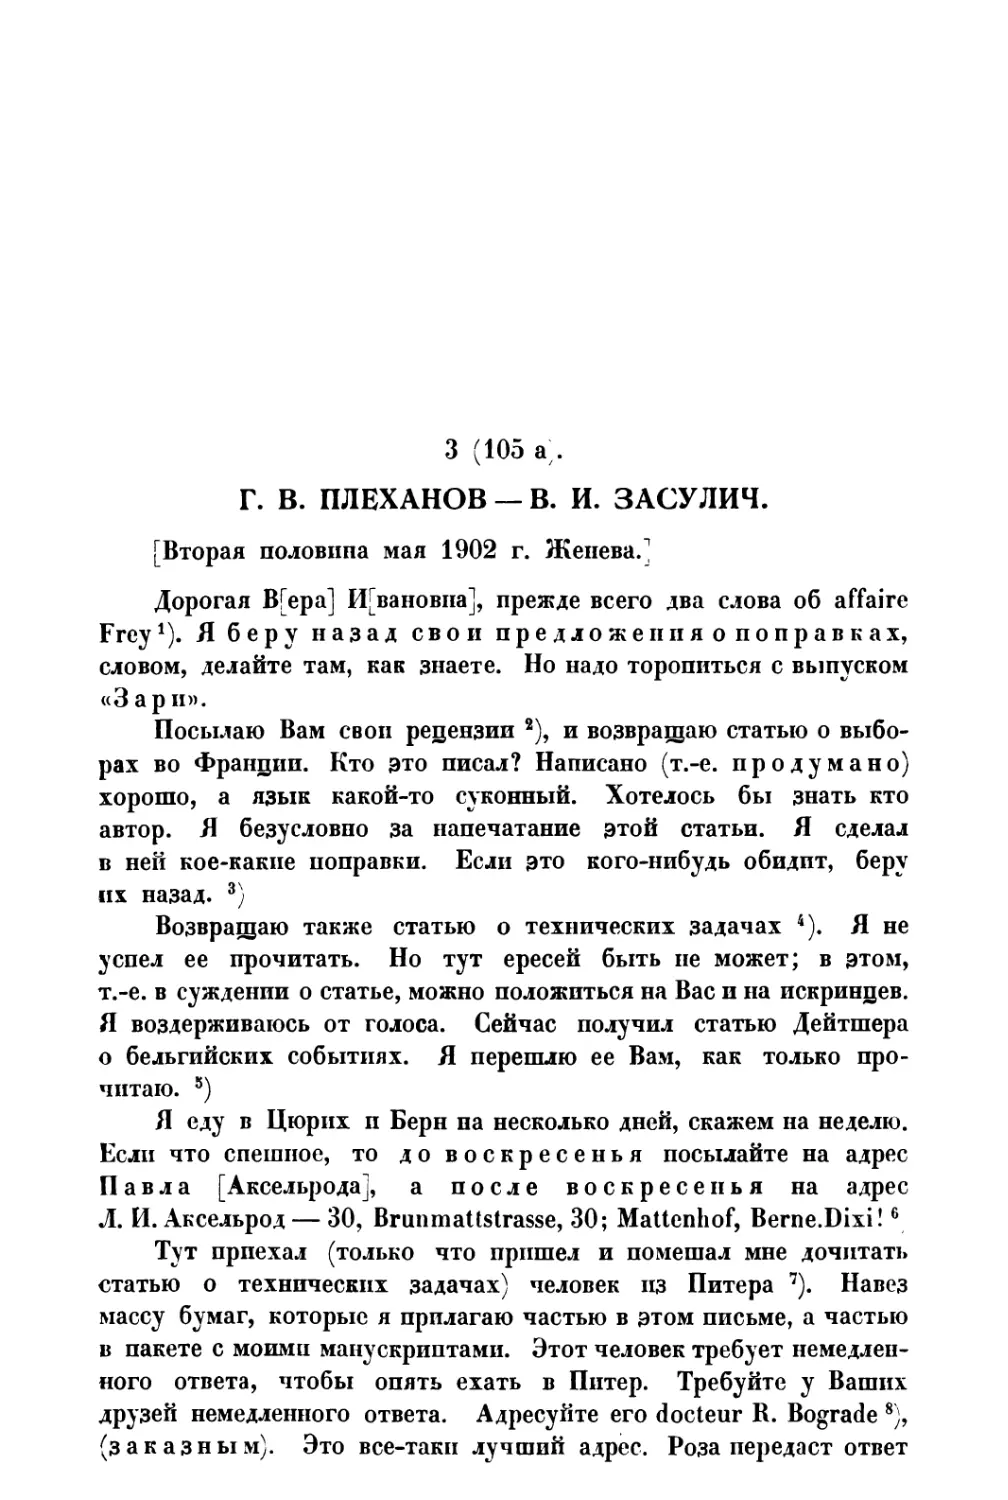 3. Г. В. Плеханов — В. И. Засулич — вторая половина мая 1902 г